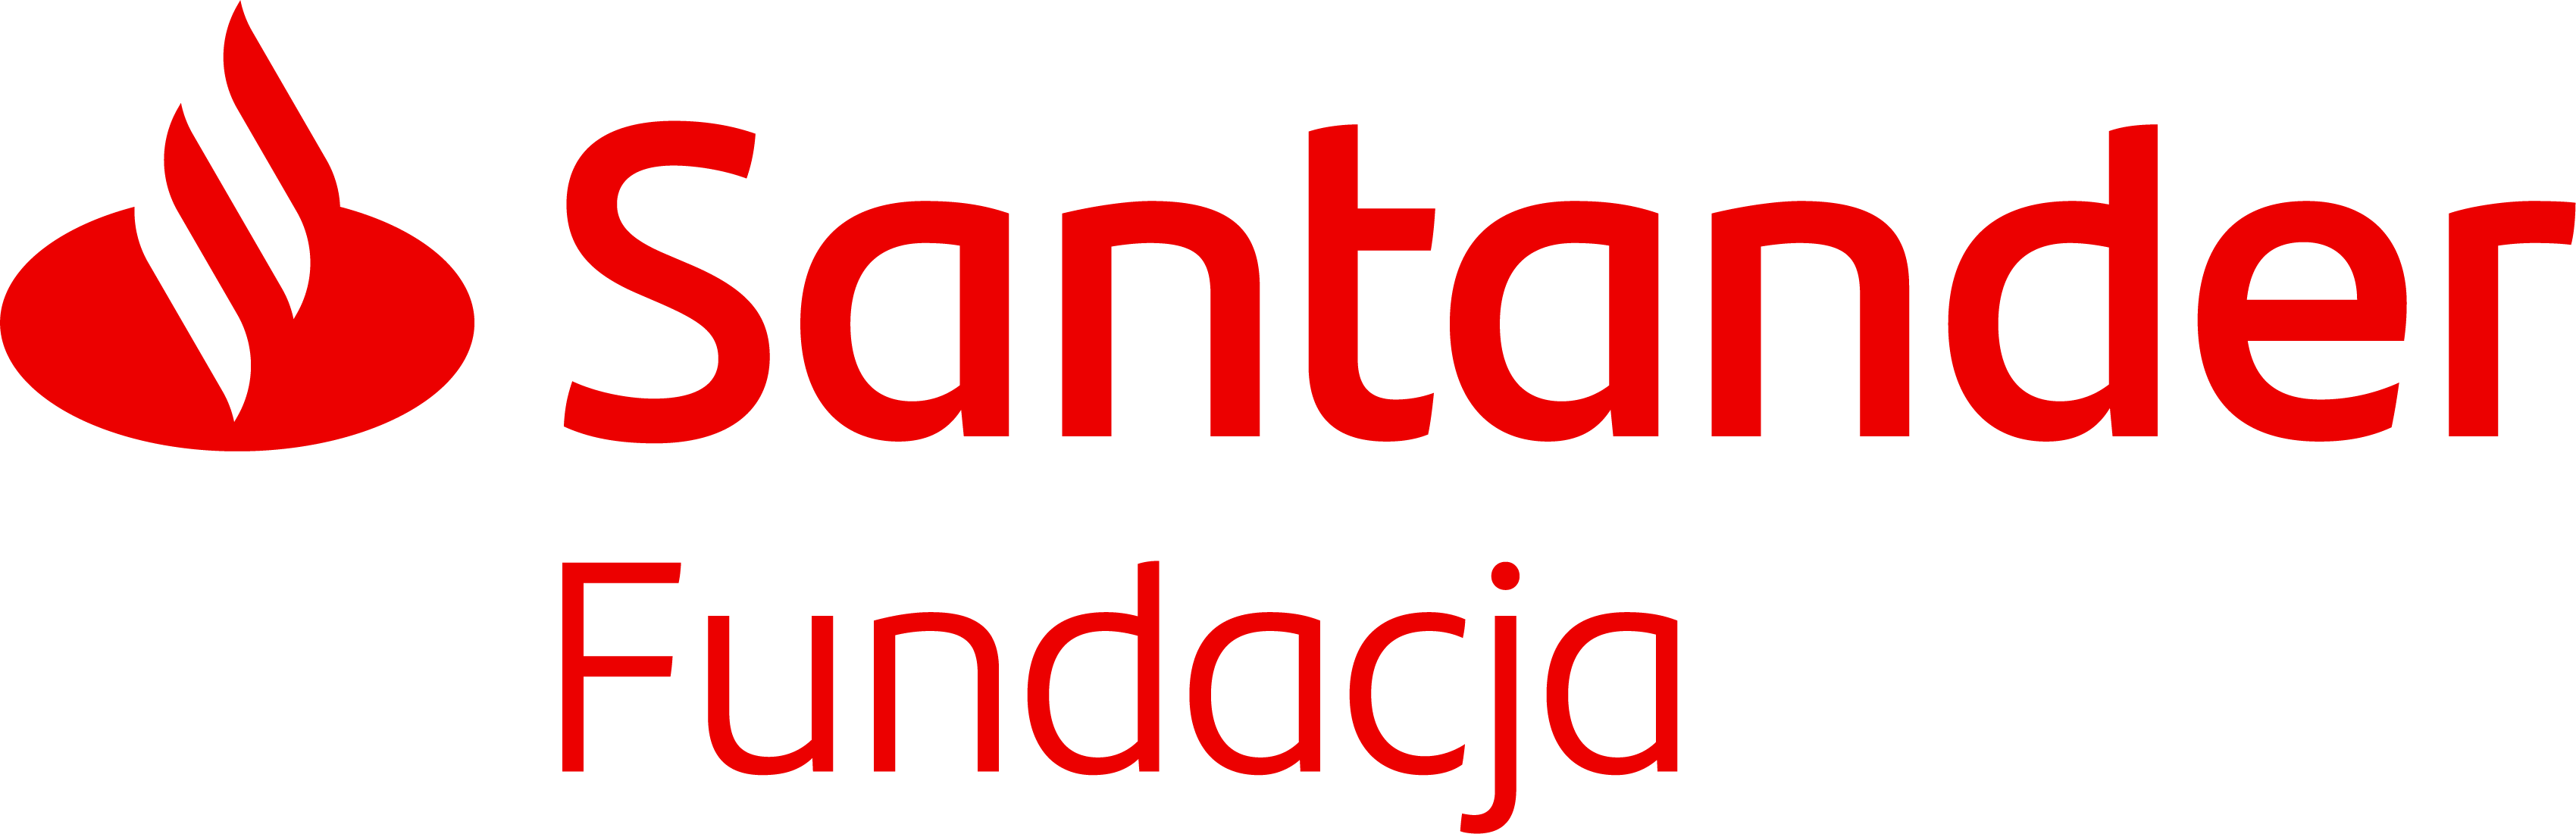 santaner logo